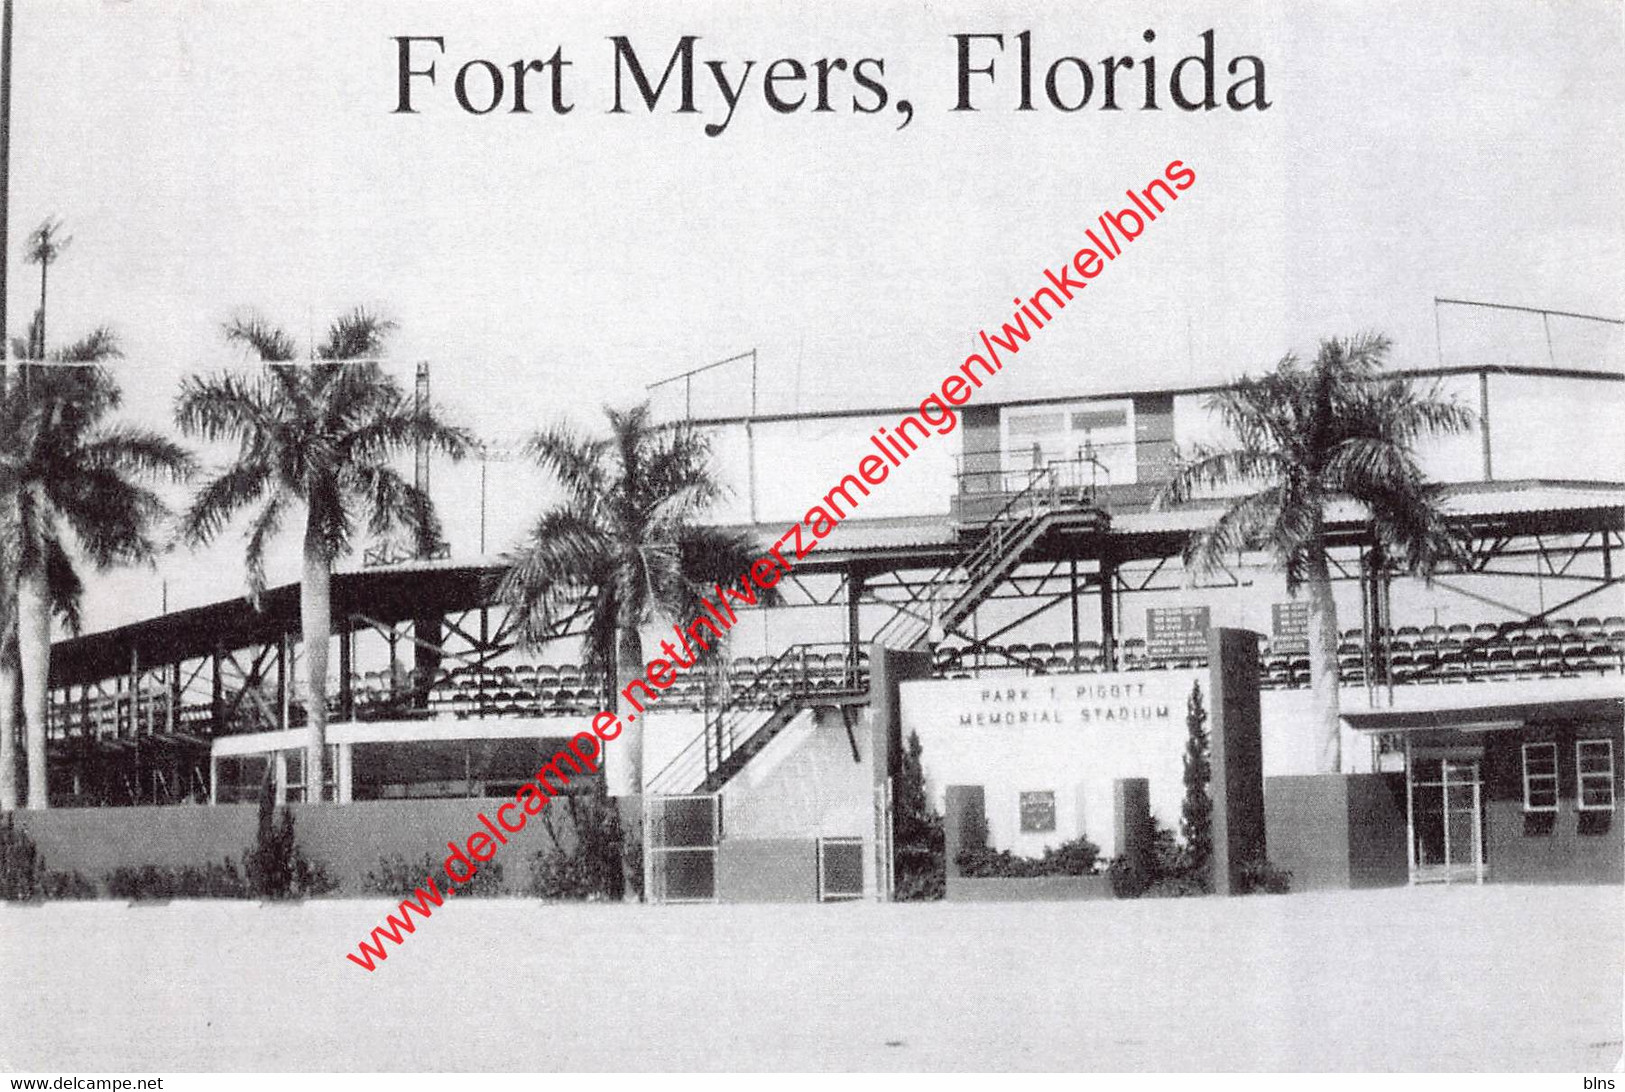 Park T. Pigott Memorial Stadium - Fort Myers Florida United States - Baseball - Fort Myers